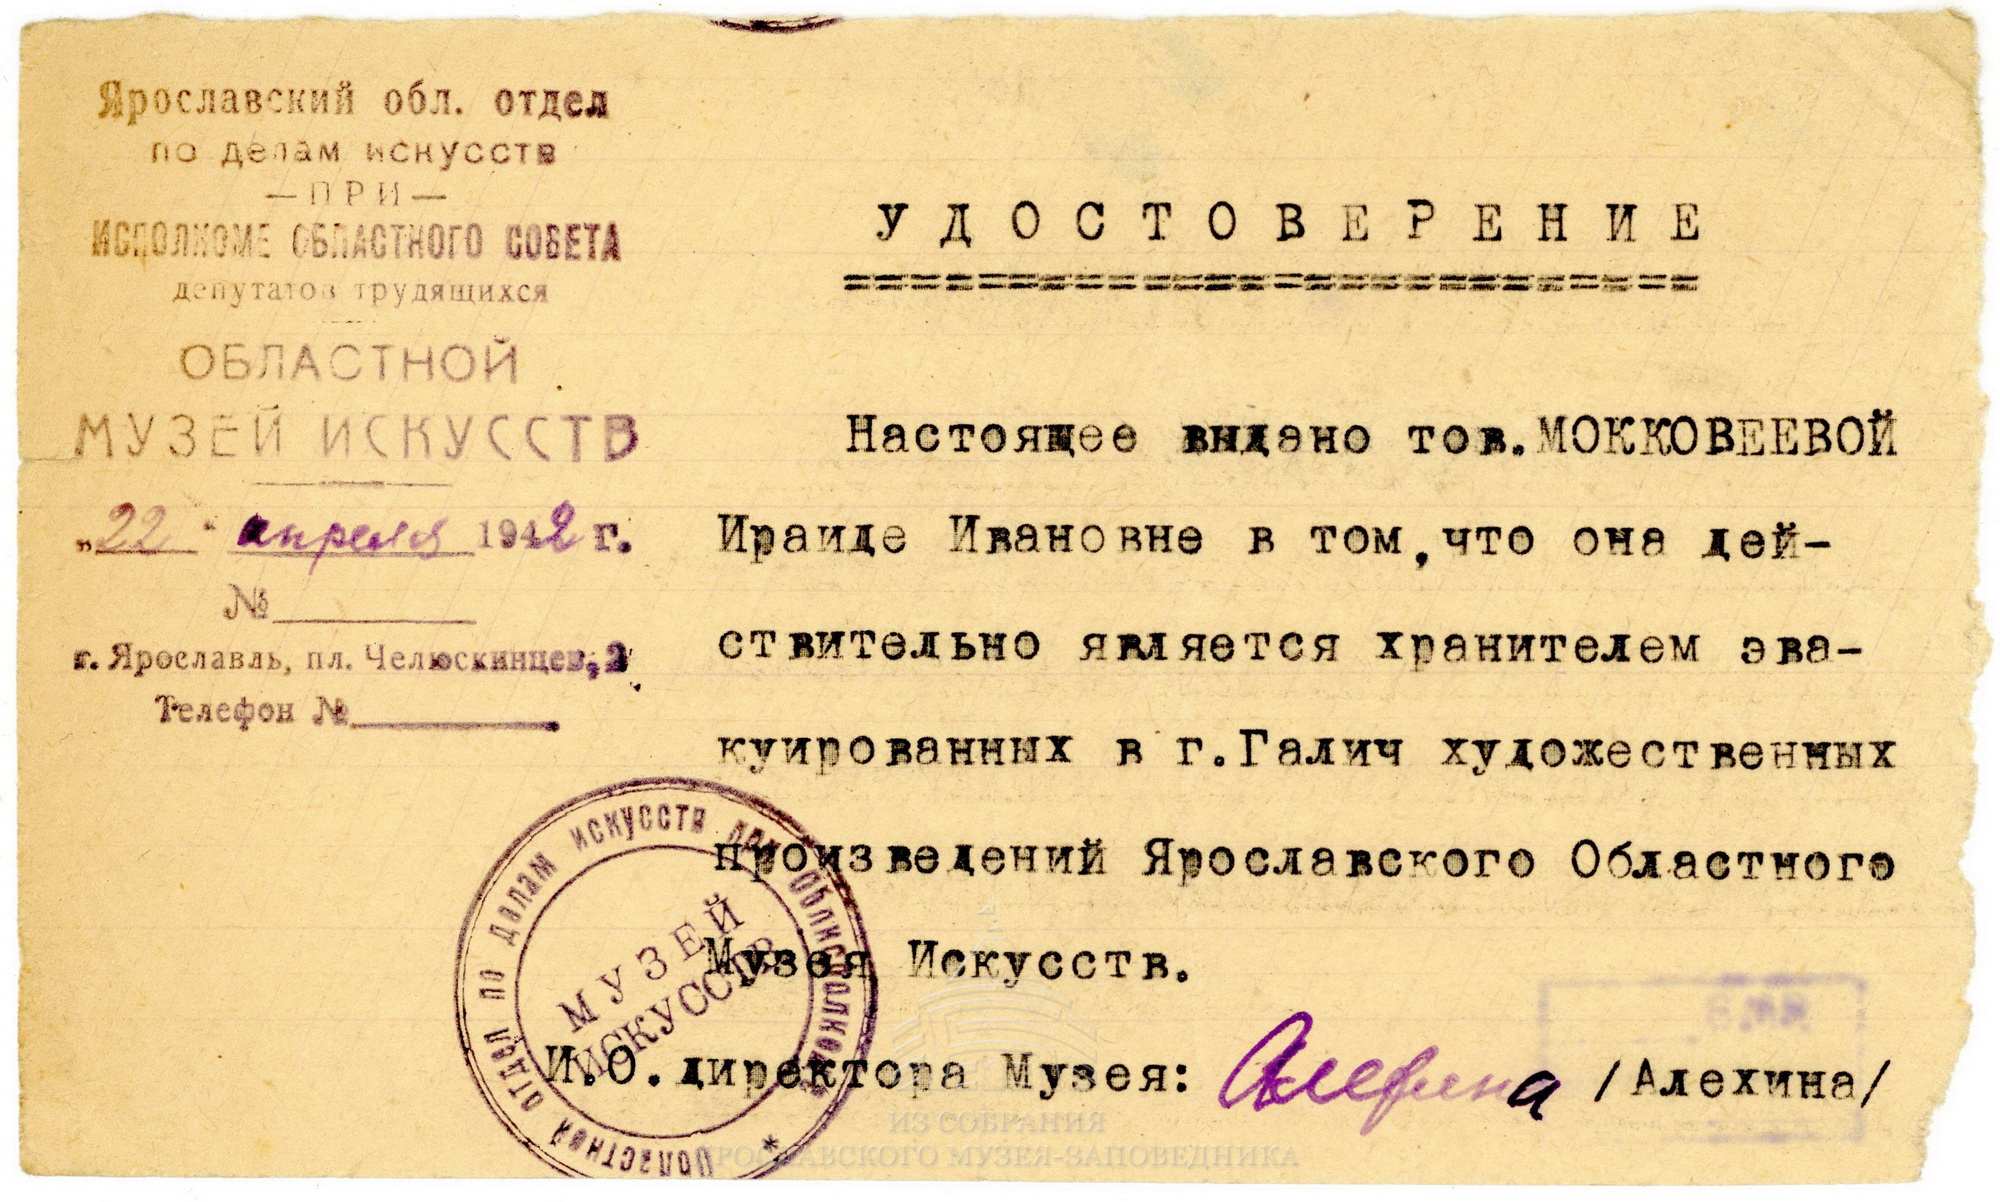 Удостоверение И. И. Макковеевой, хранителя экспонатов Ярославского областного музея искусств, эвакуированных в г. Галич. 22 апреля 1942 г.